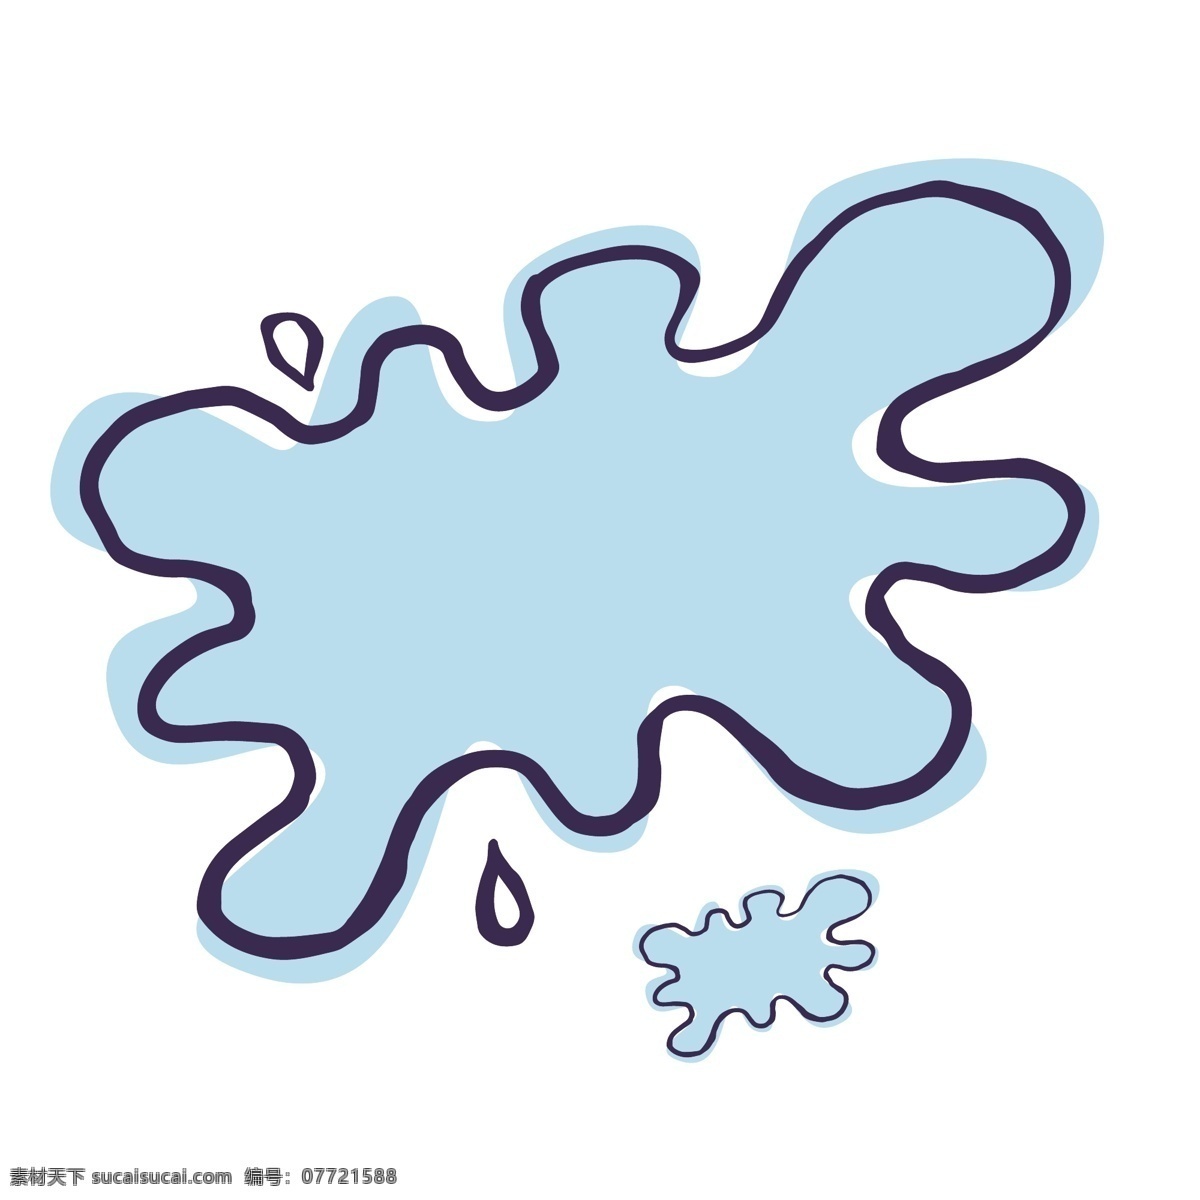 矢量图 卡通 水渍 图案 蓝色水滴 喷溅 蓝色水花